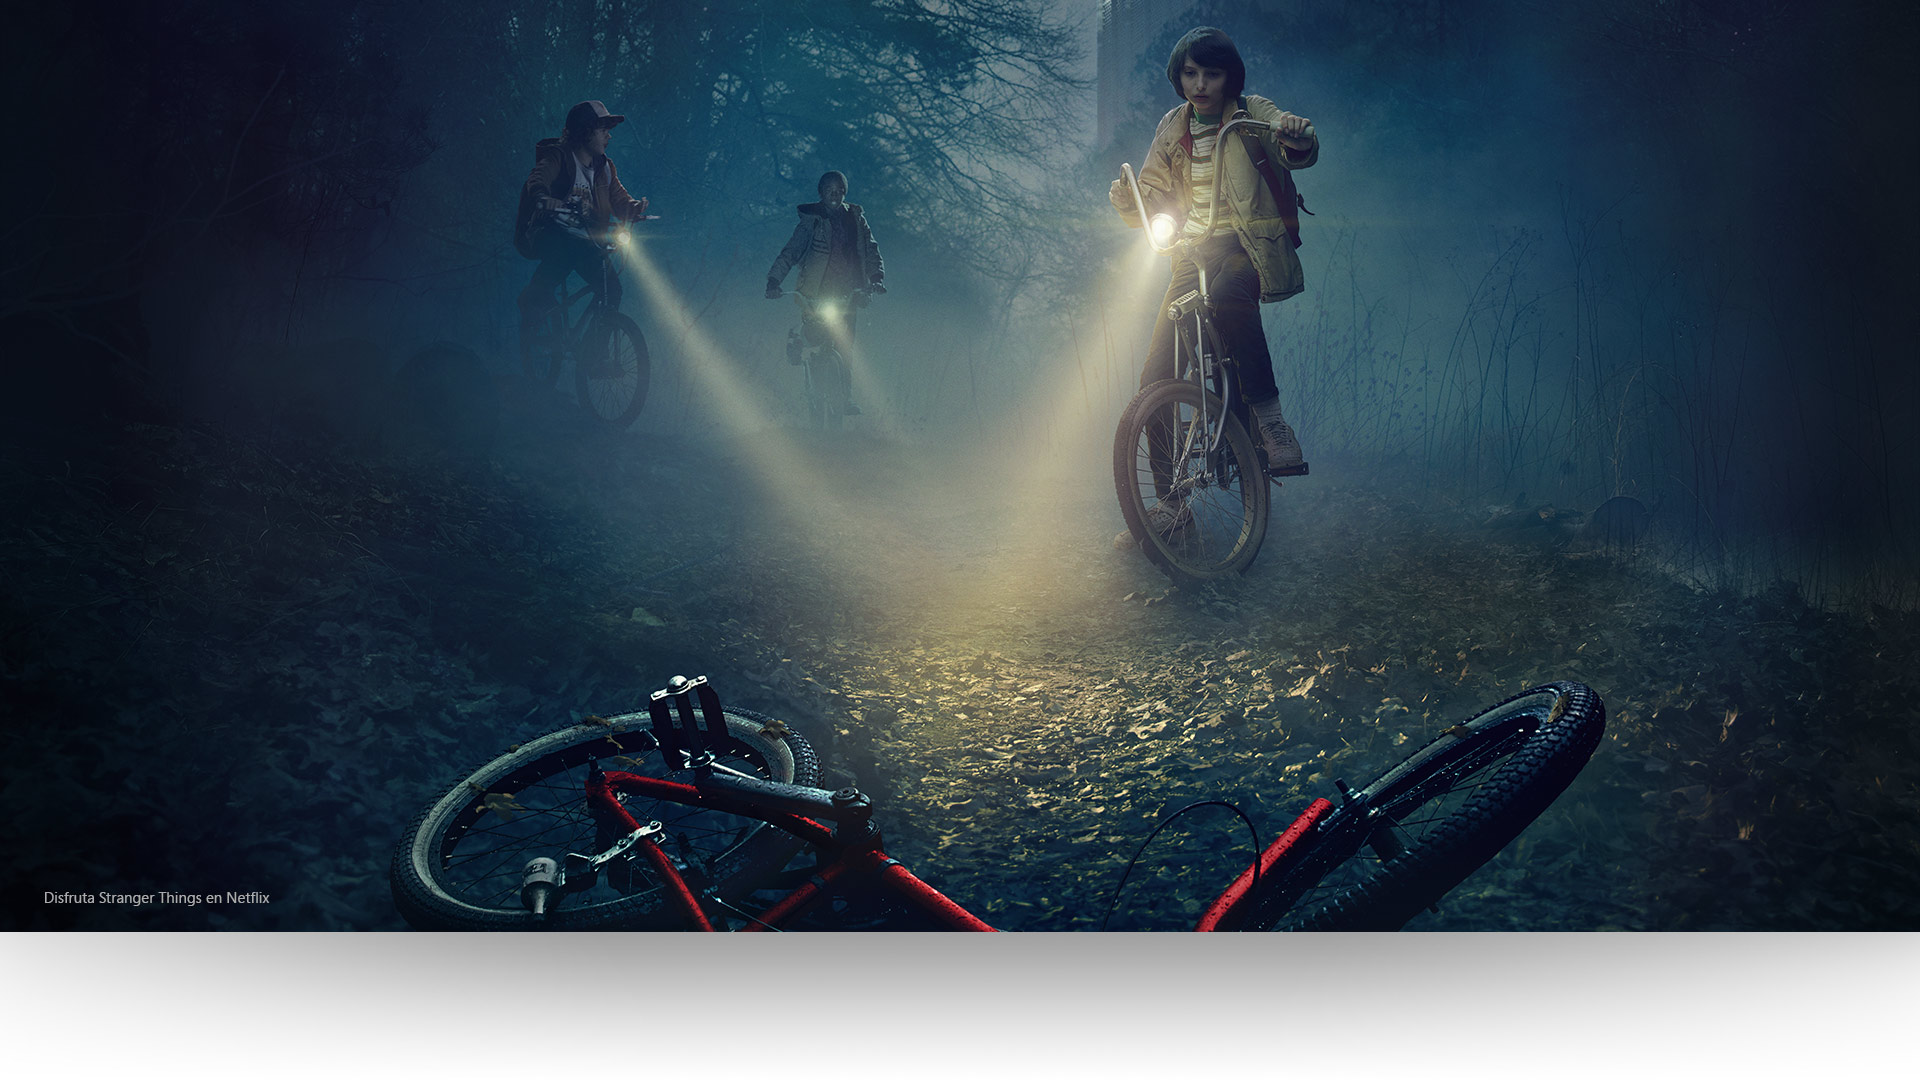 Stranger Things: Dustin, Lucas y Mike iluminan una bicicleta abandonada en un sombrío sendero del bosque. Mira Stranger Things en Netflix.